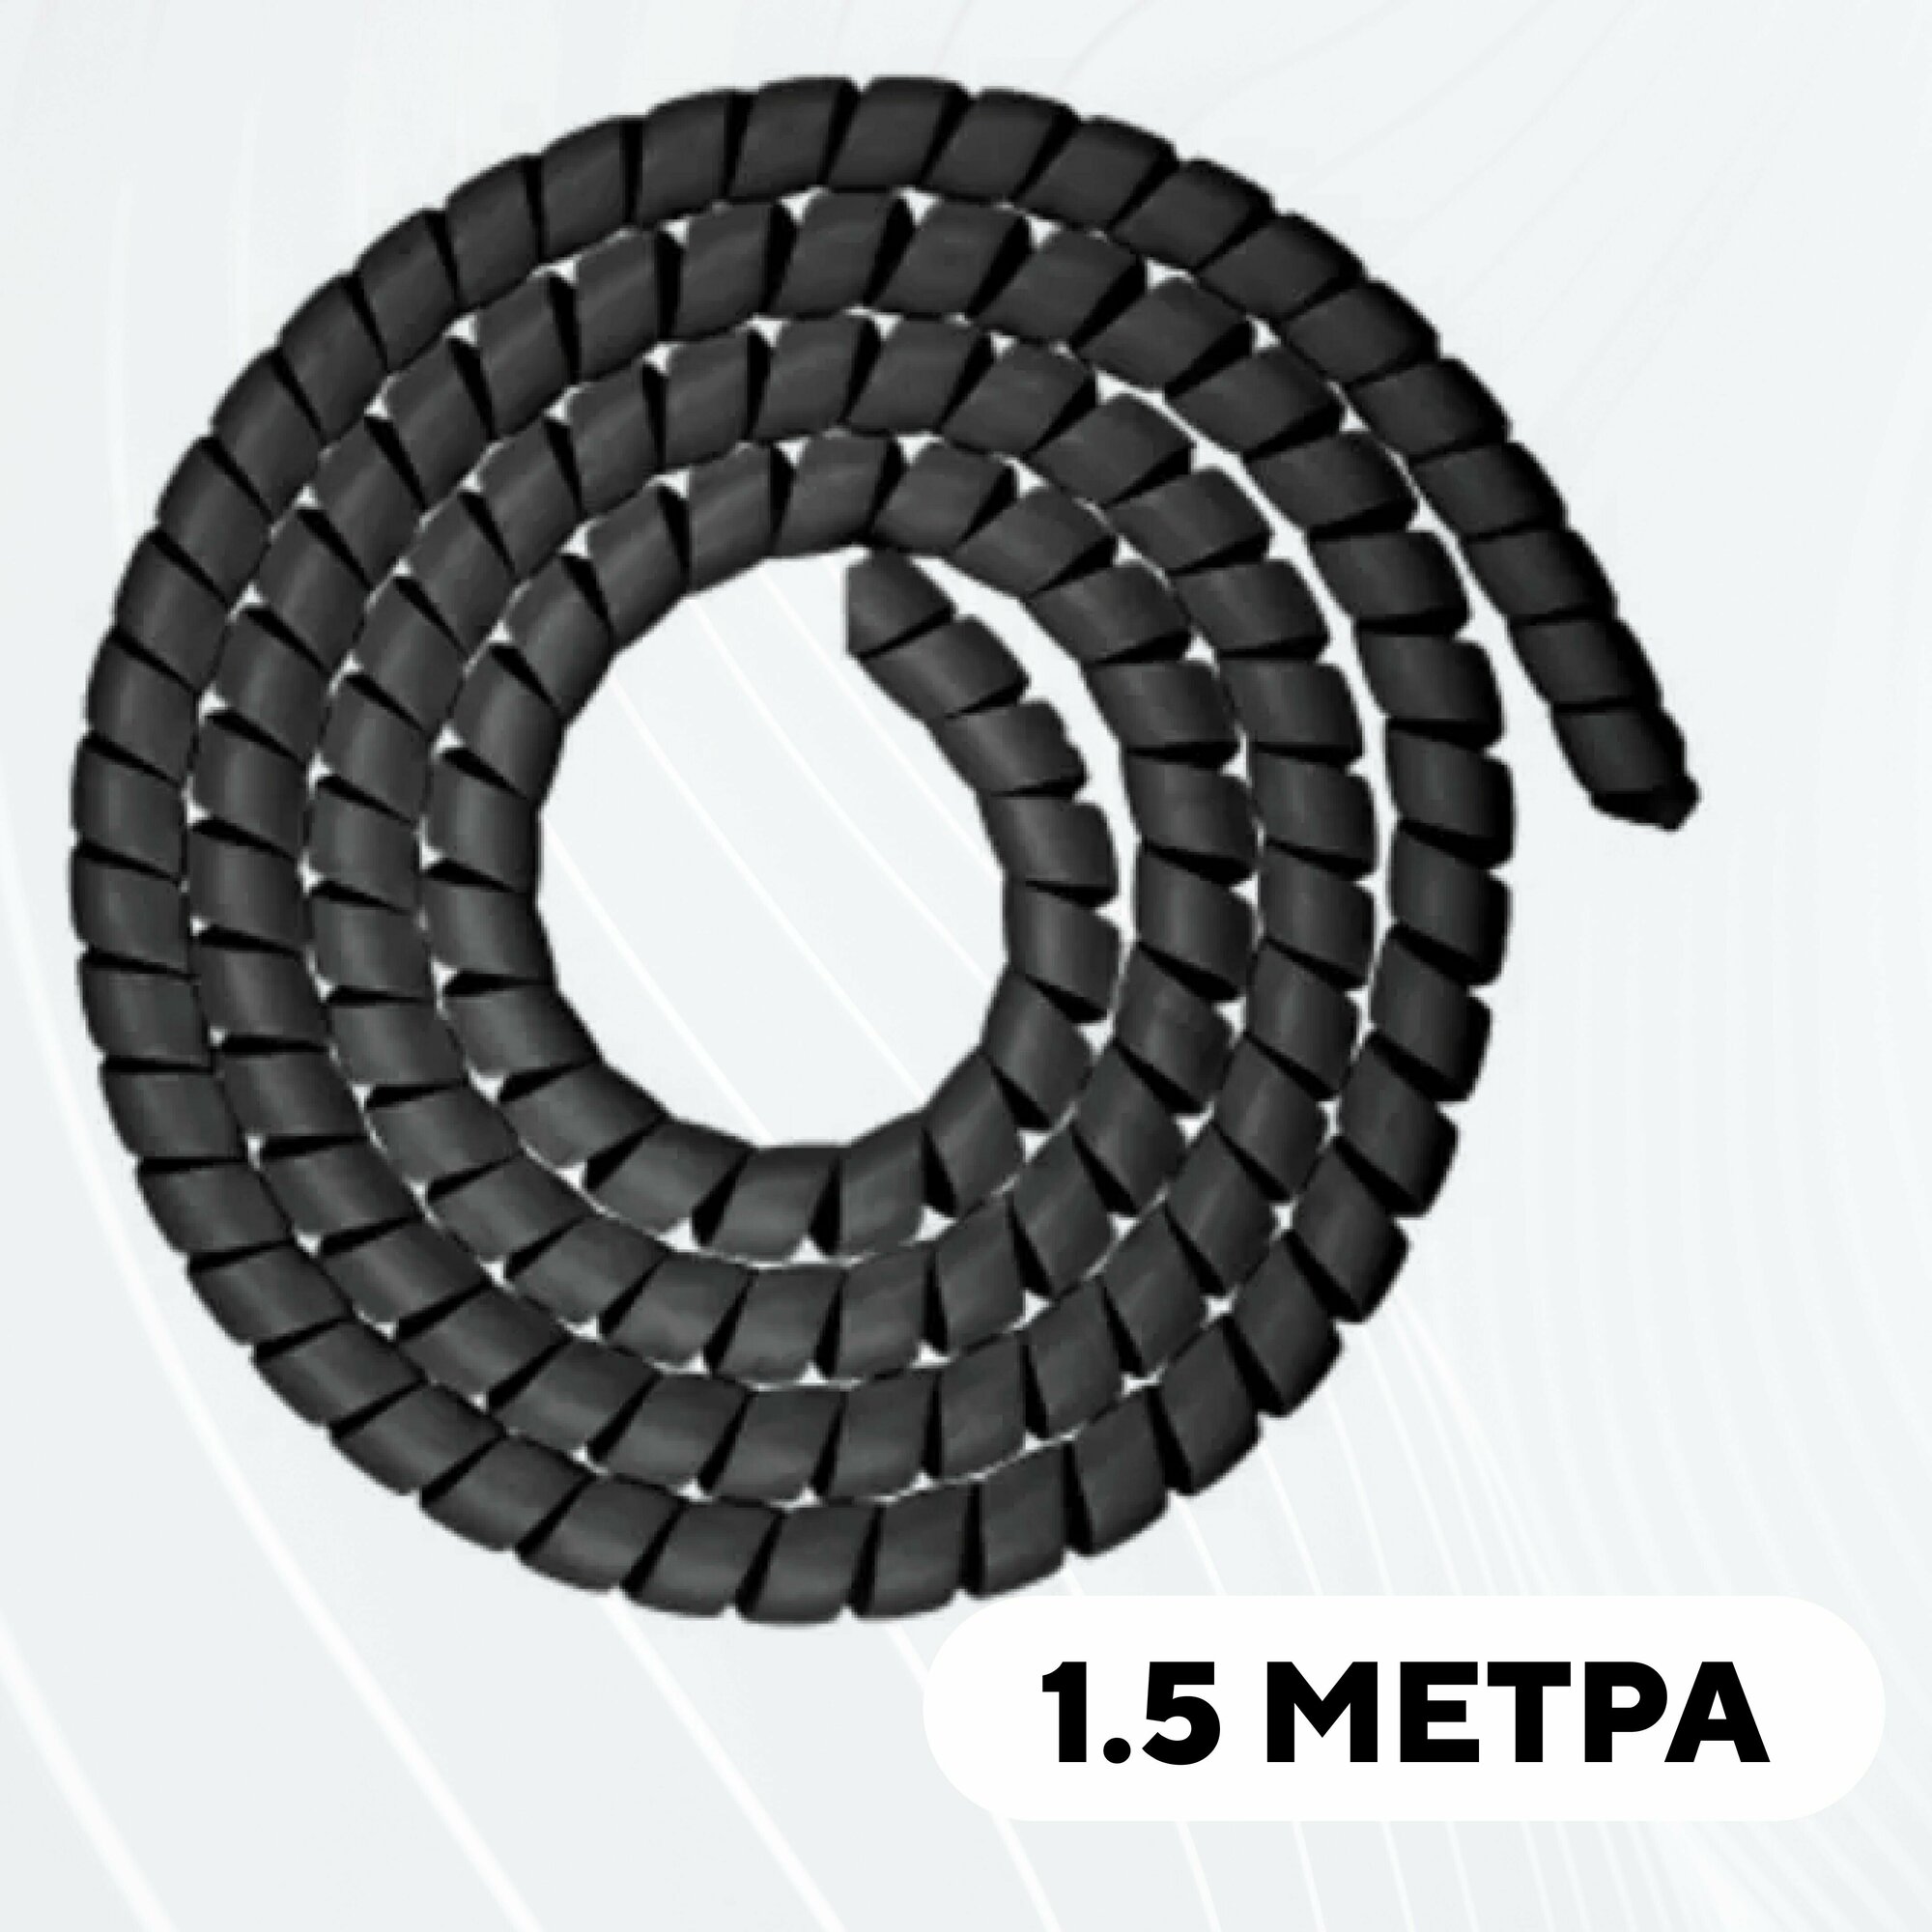 Спиральная обмотка проводки, оплетка для проводов (черный, 1.5 метра)